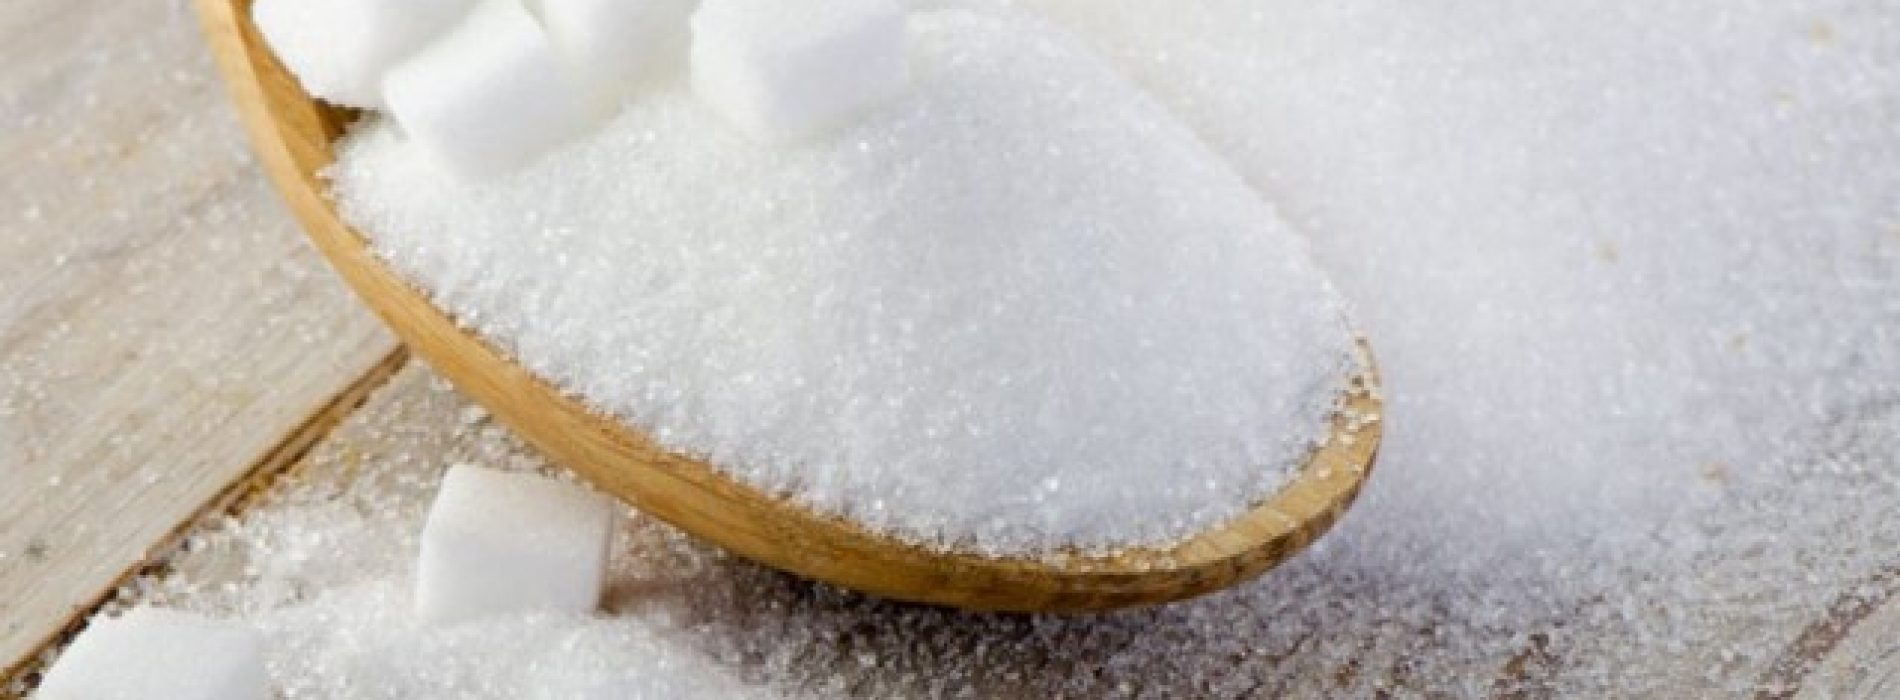 Relatie tussen suiker en kanker onthuld. Deze Belgische wetenschappers doen baanbrekende ontdekking